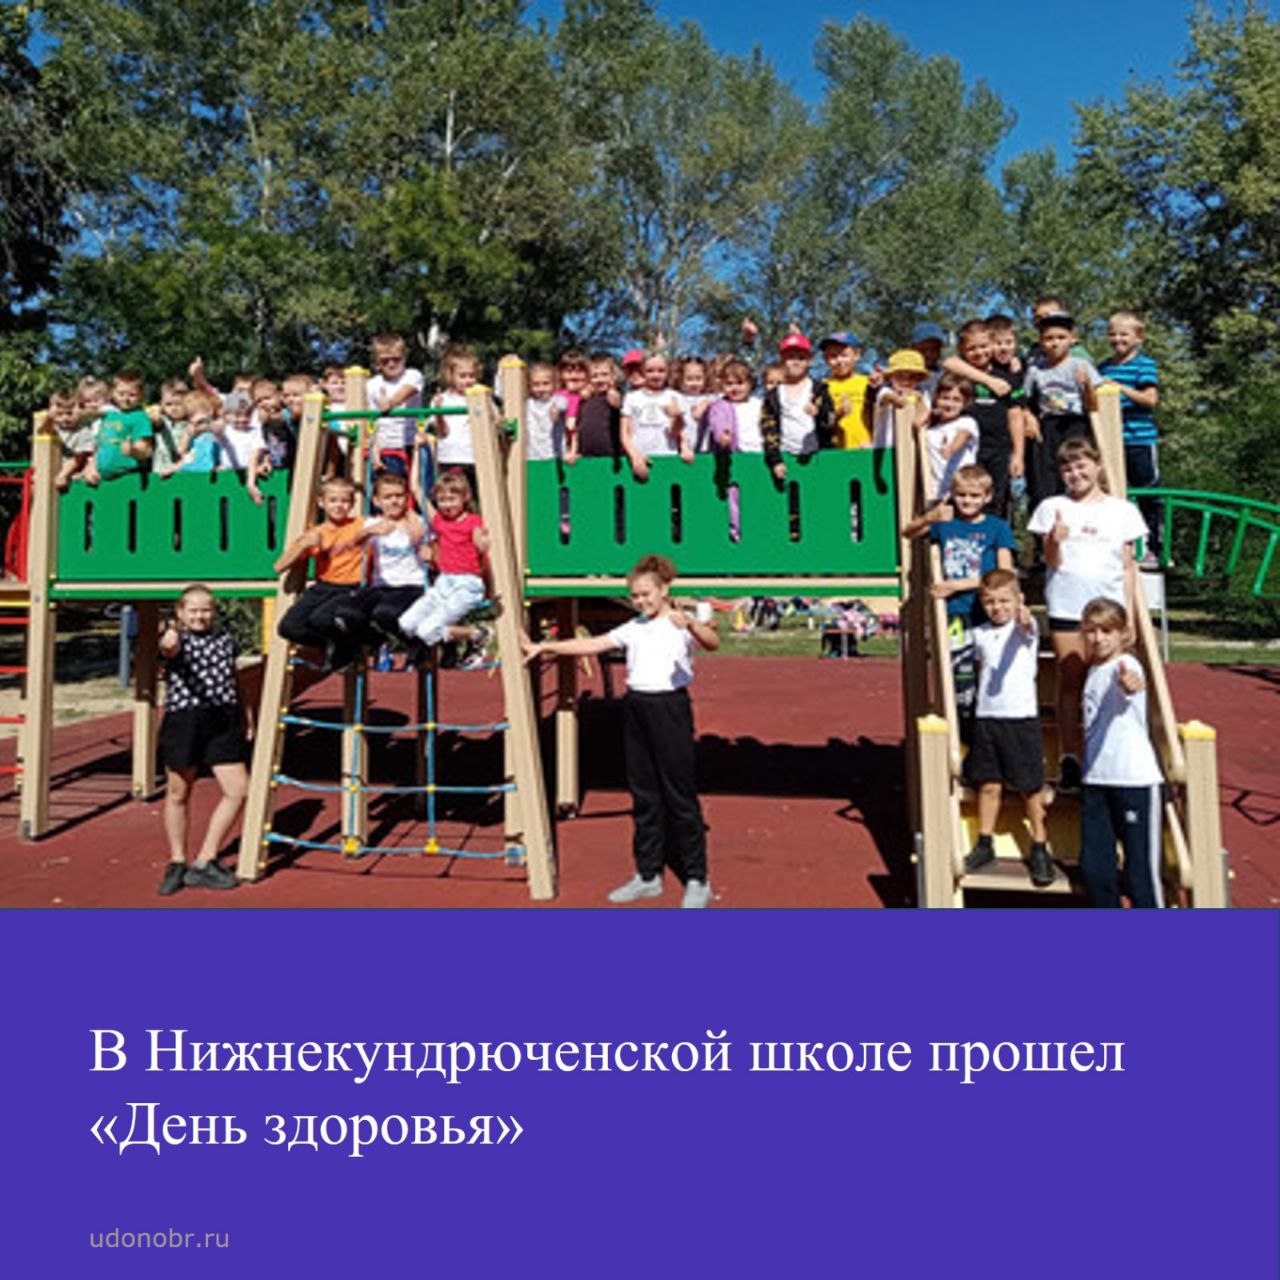 В Нижнекундрюченской школе прошёл «День здоровья».